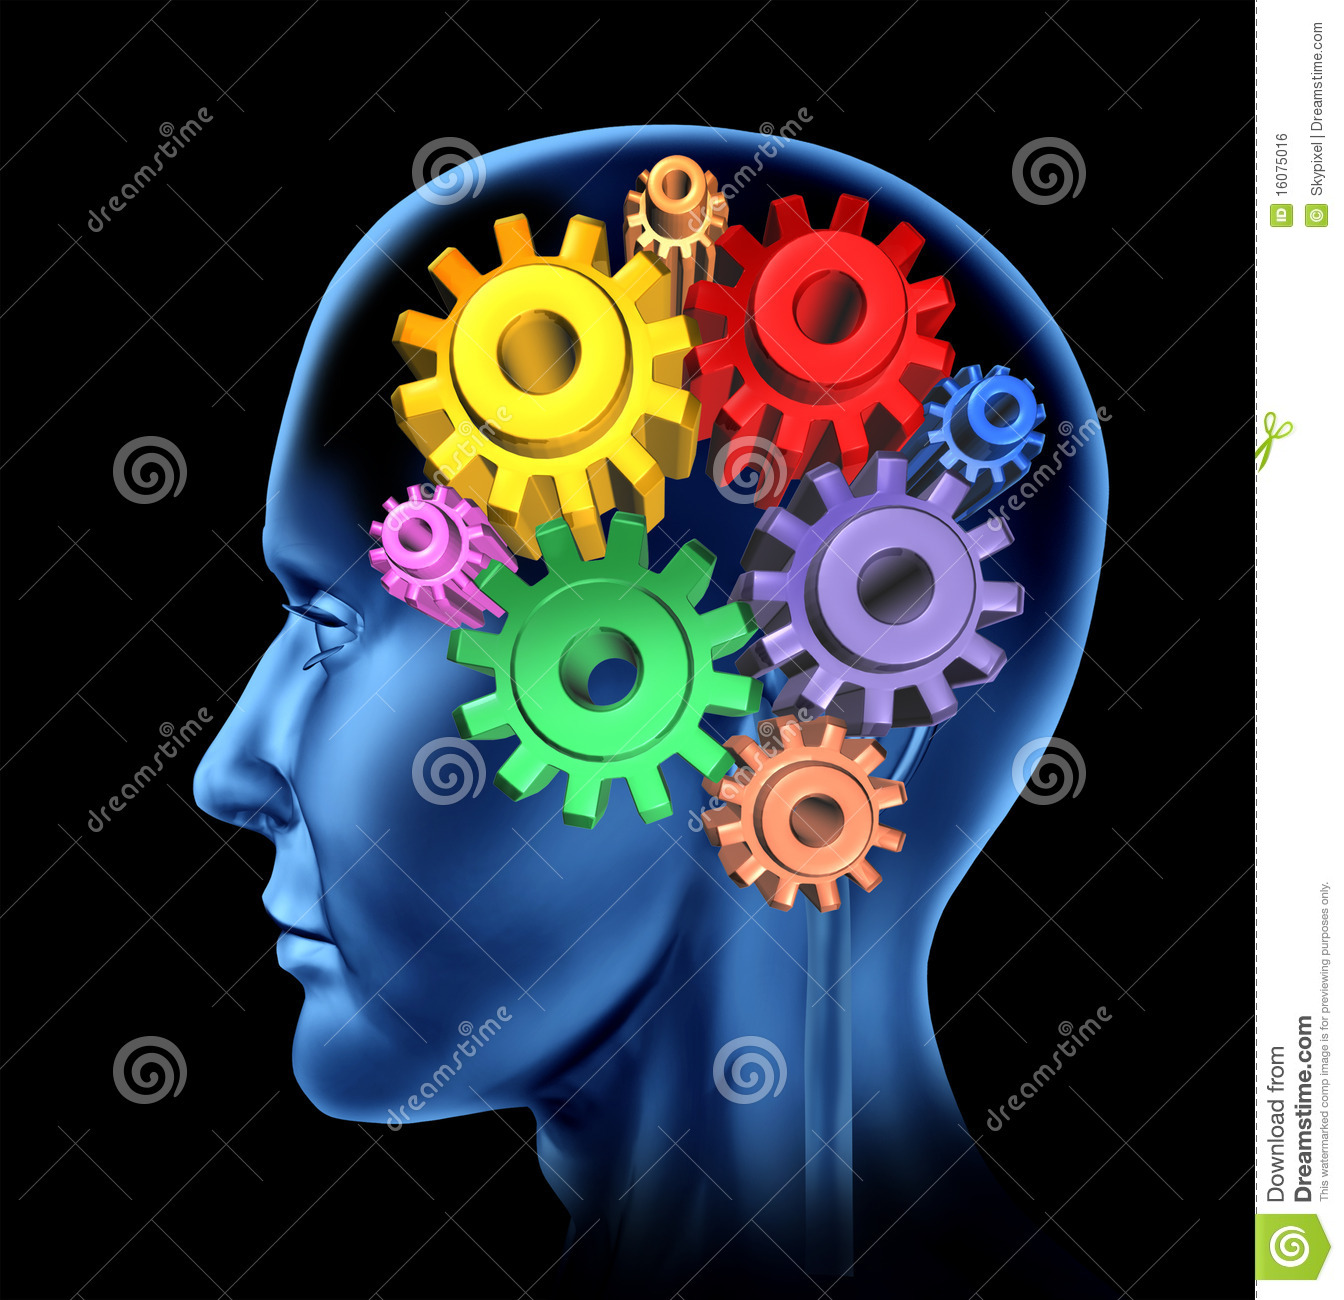 Brain Activity Intelligence Royalty Free Stock Image   Image  16075016